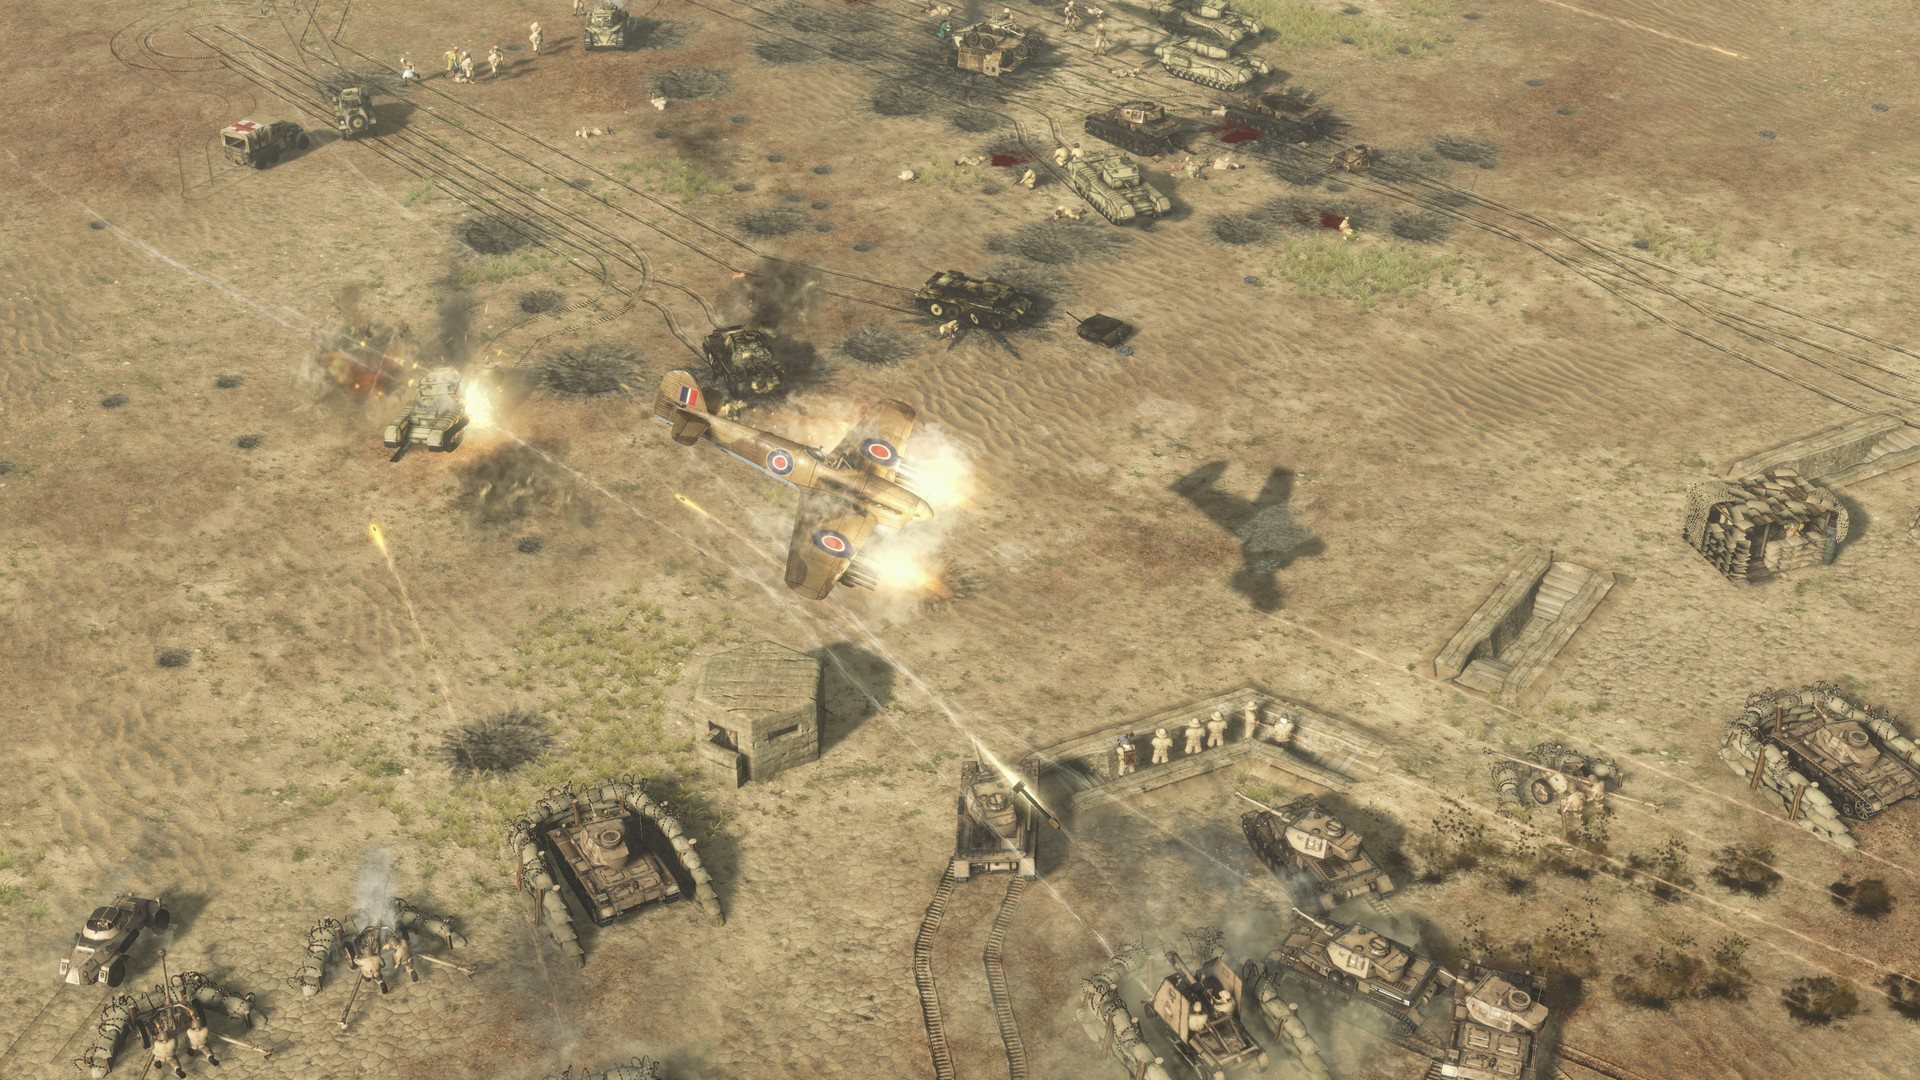 Sudden Strike 4 - Africa: Desert War DLC Steam CD Key [USD 1.8]